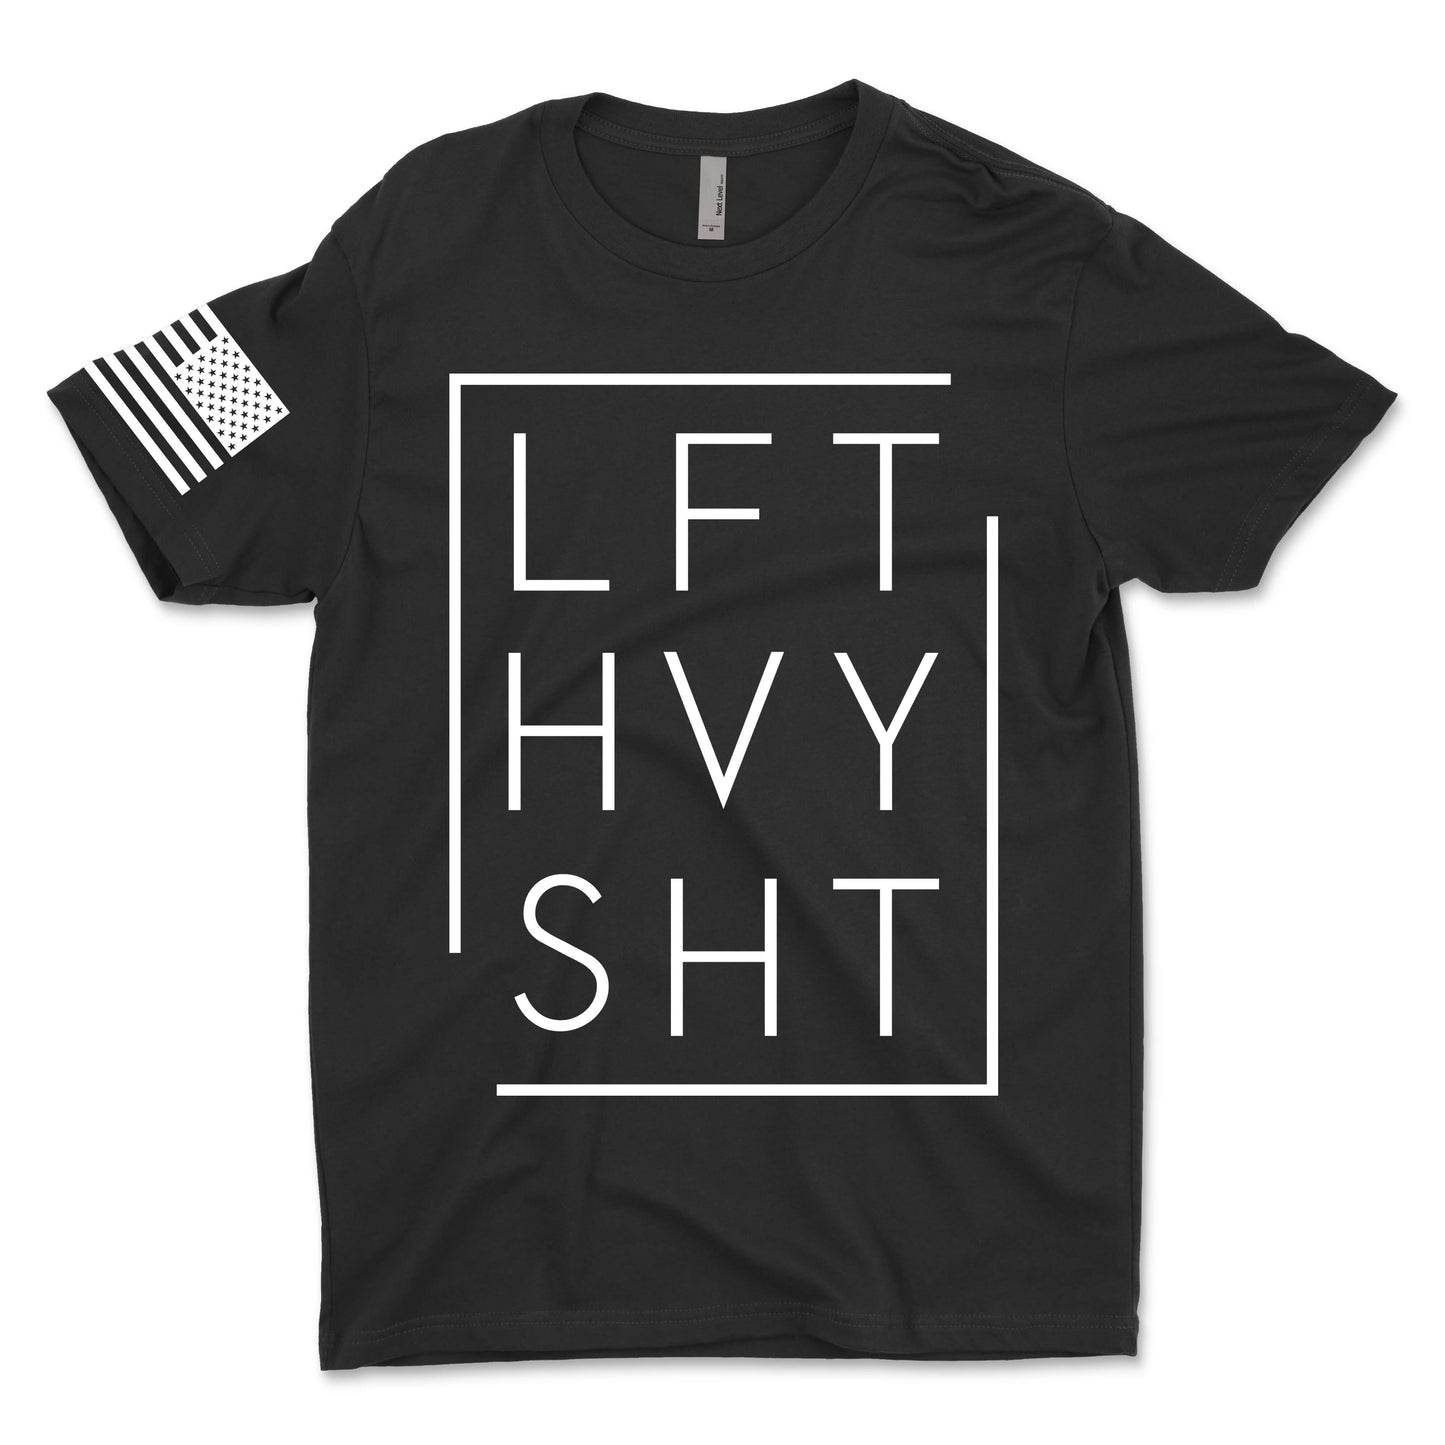 LFT HVY SHT Men's T-Shirt